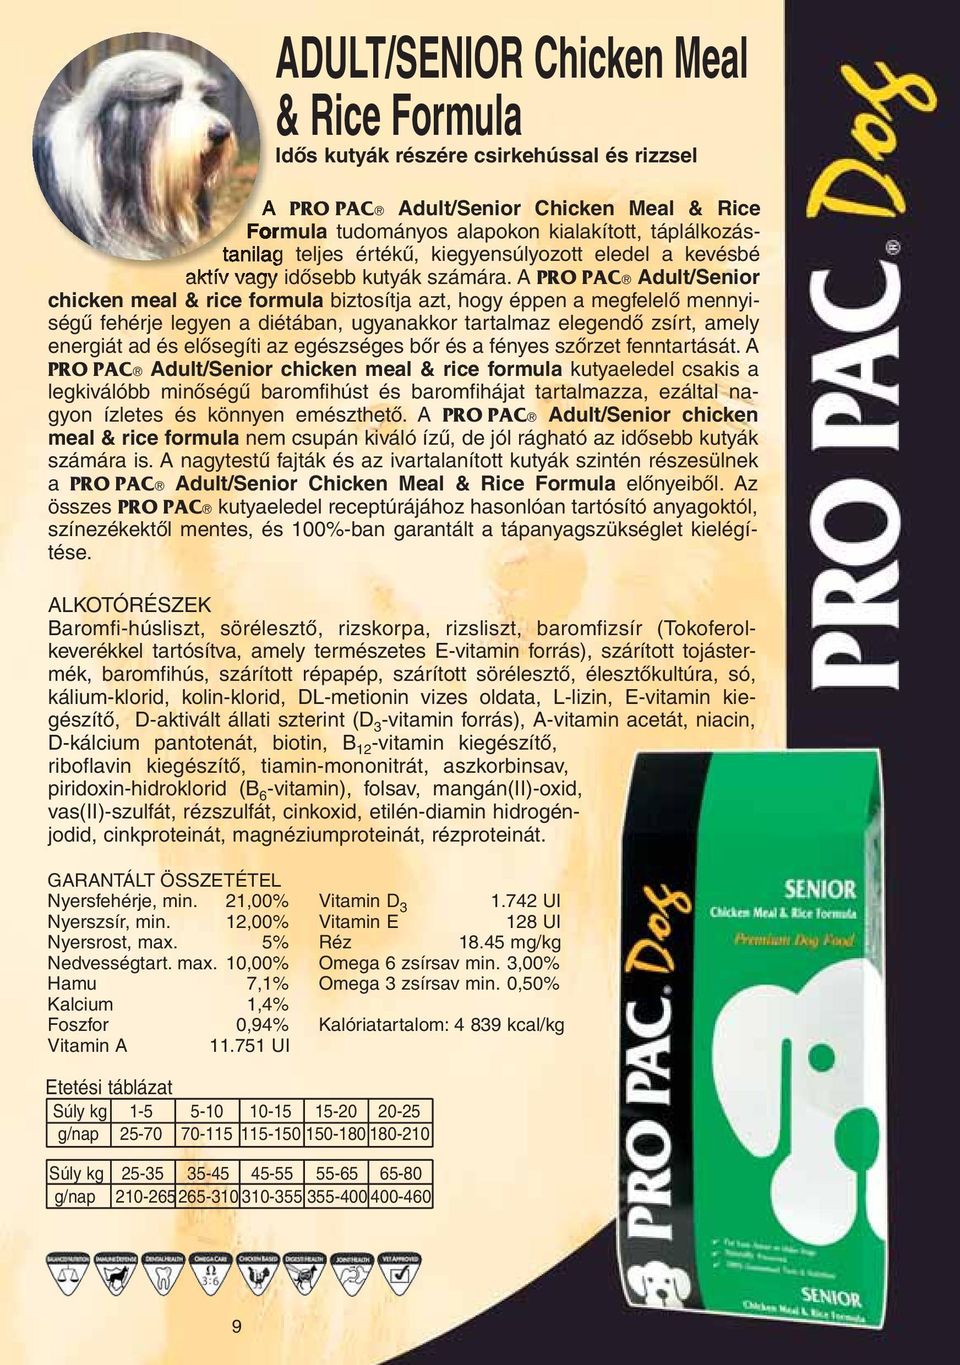 A PRO PAC Adult/Senior chicken meal & rice formula biztosítja azt, hogy éppen a megfelelô mennyiségû fehérje legyen a diétában, ugyanakkor tartalmaz elegendô zsírt, amely energiát ad és elôsegíti az